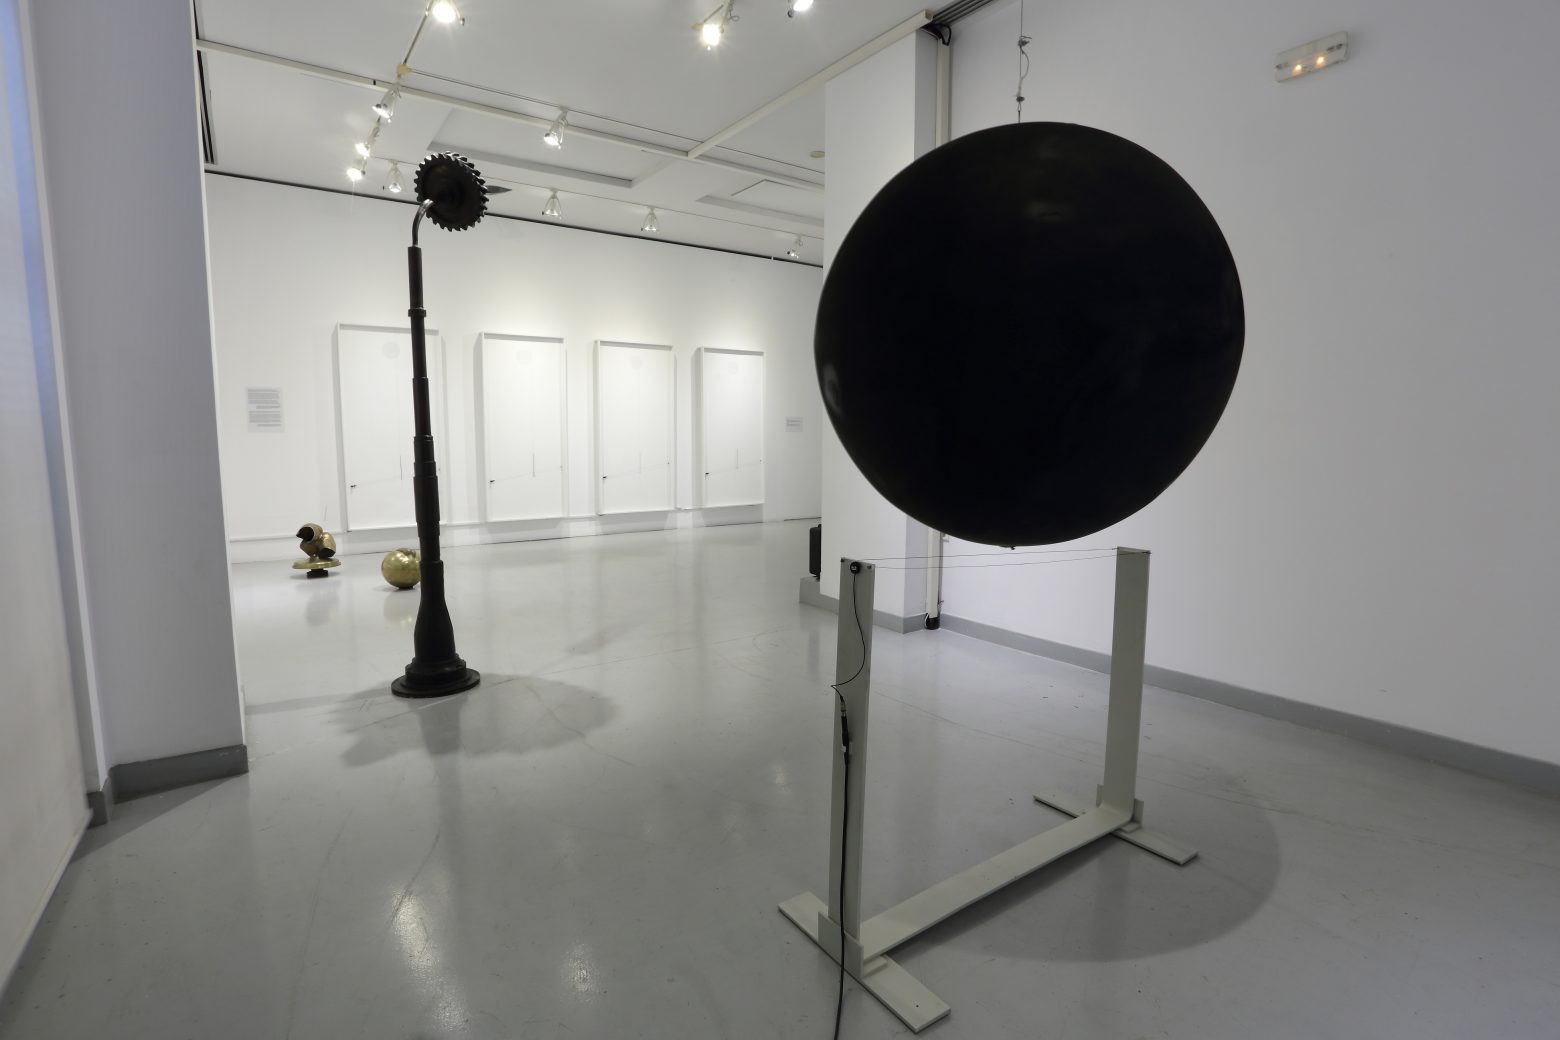 Η έκθεση «Takis – Ενεργειακοί Τόποι» παρουσιάζεται στο MOMus-Μουσείο Άλεξ Μυλωνά